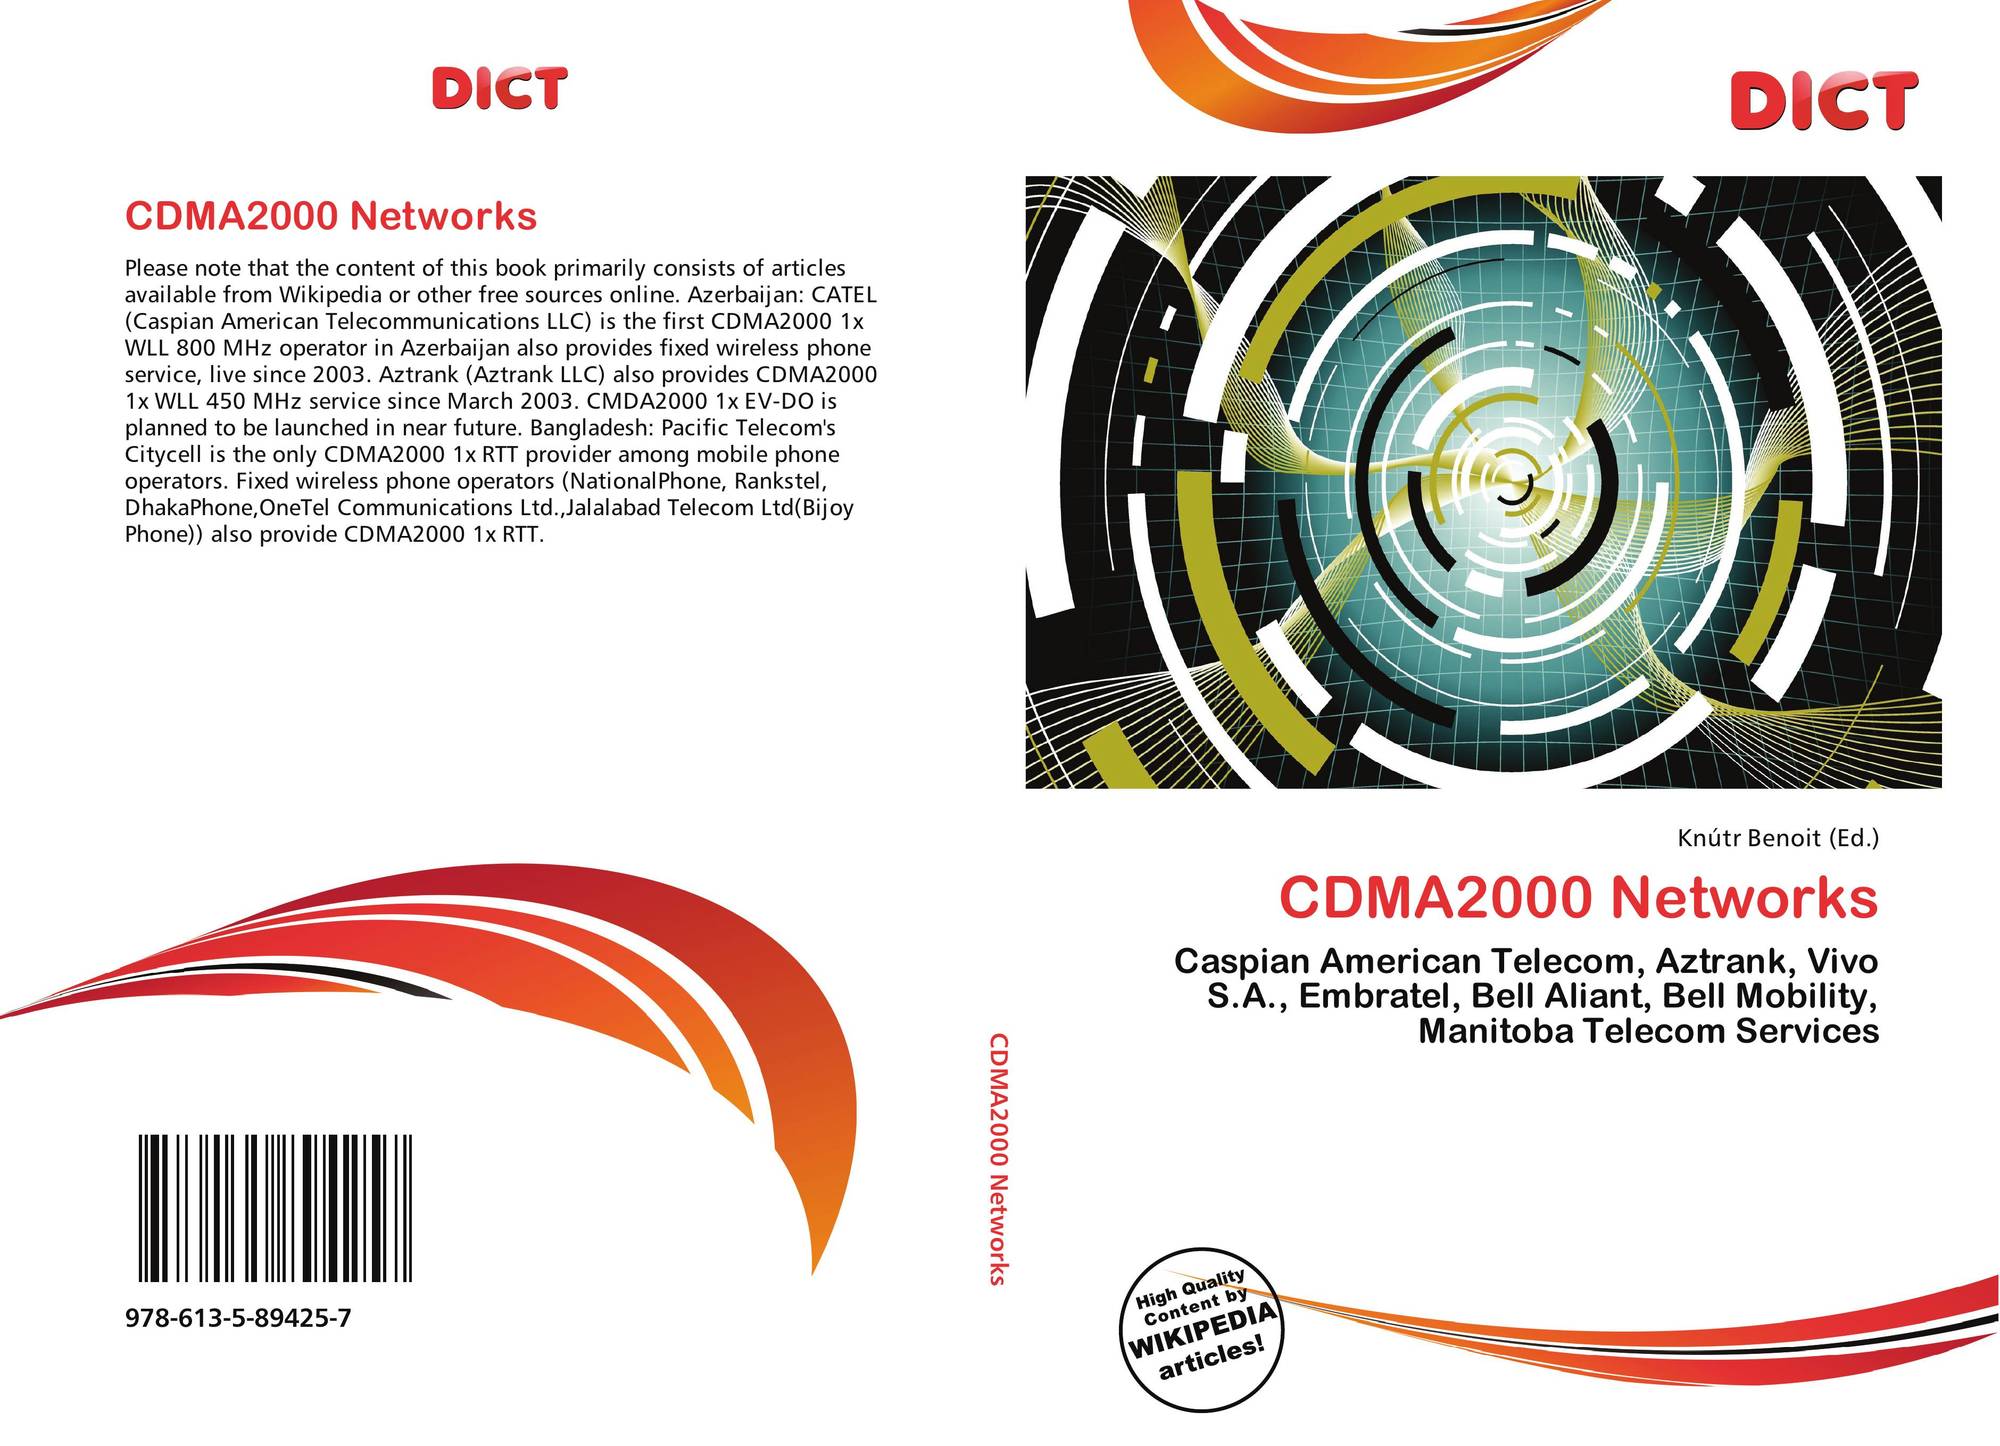 CDMA2000 Logo - CDMA2000 Networks, 978-613-5-89425-7, 6135894250 ,9786135894257